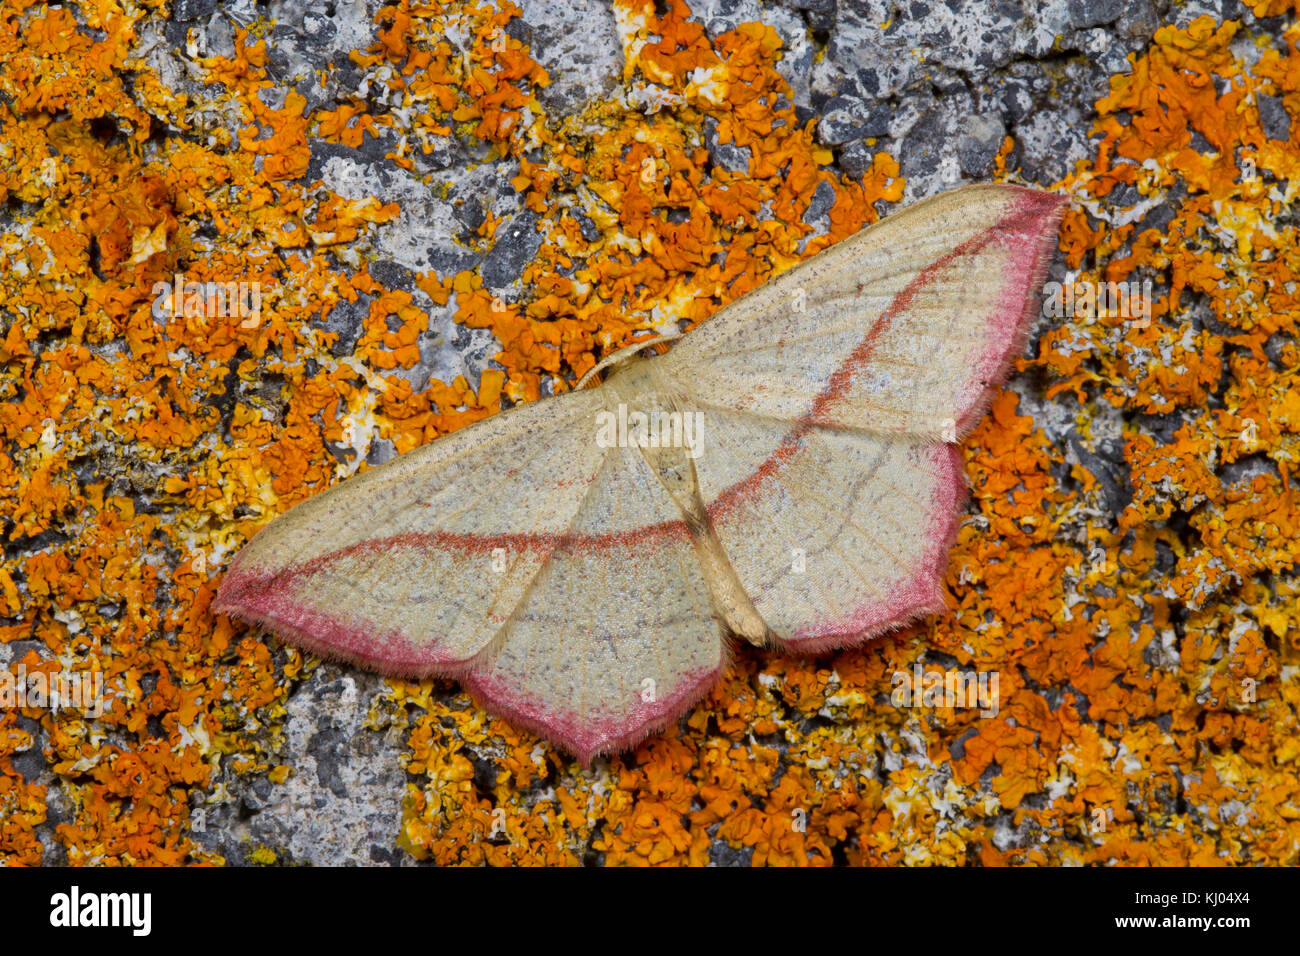 Veine le sang (Timandra comae) papillon adulte reposant sur un mur couvert de lichens. Powys, Pays de Galles. En août. Banque D'Images